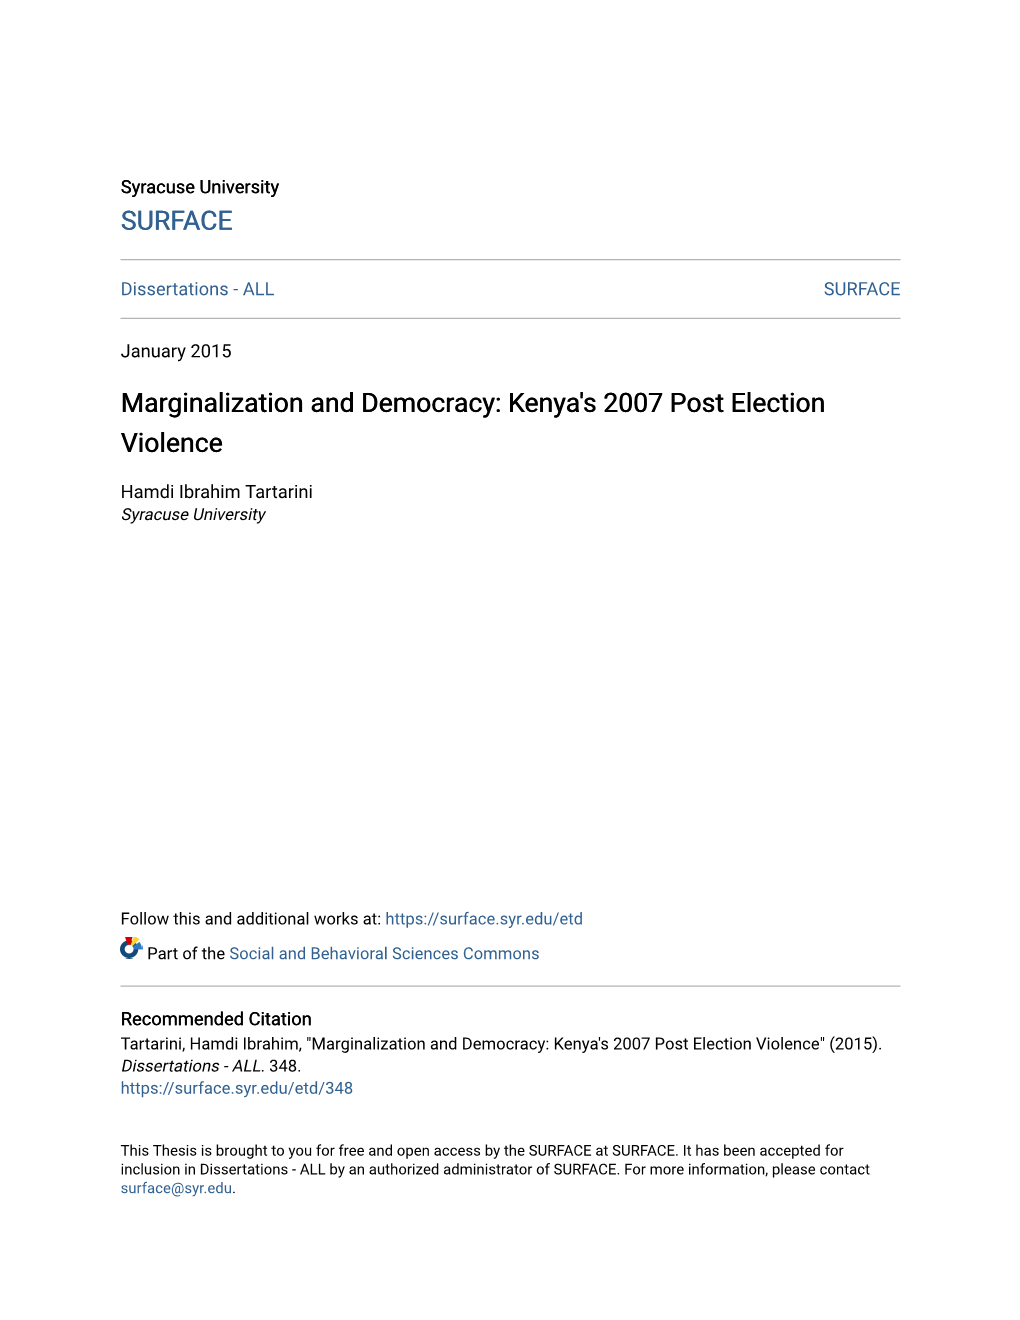 Kenya's 2007 Post Election Violence